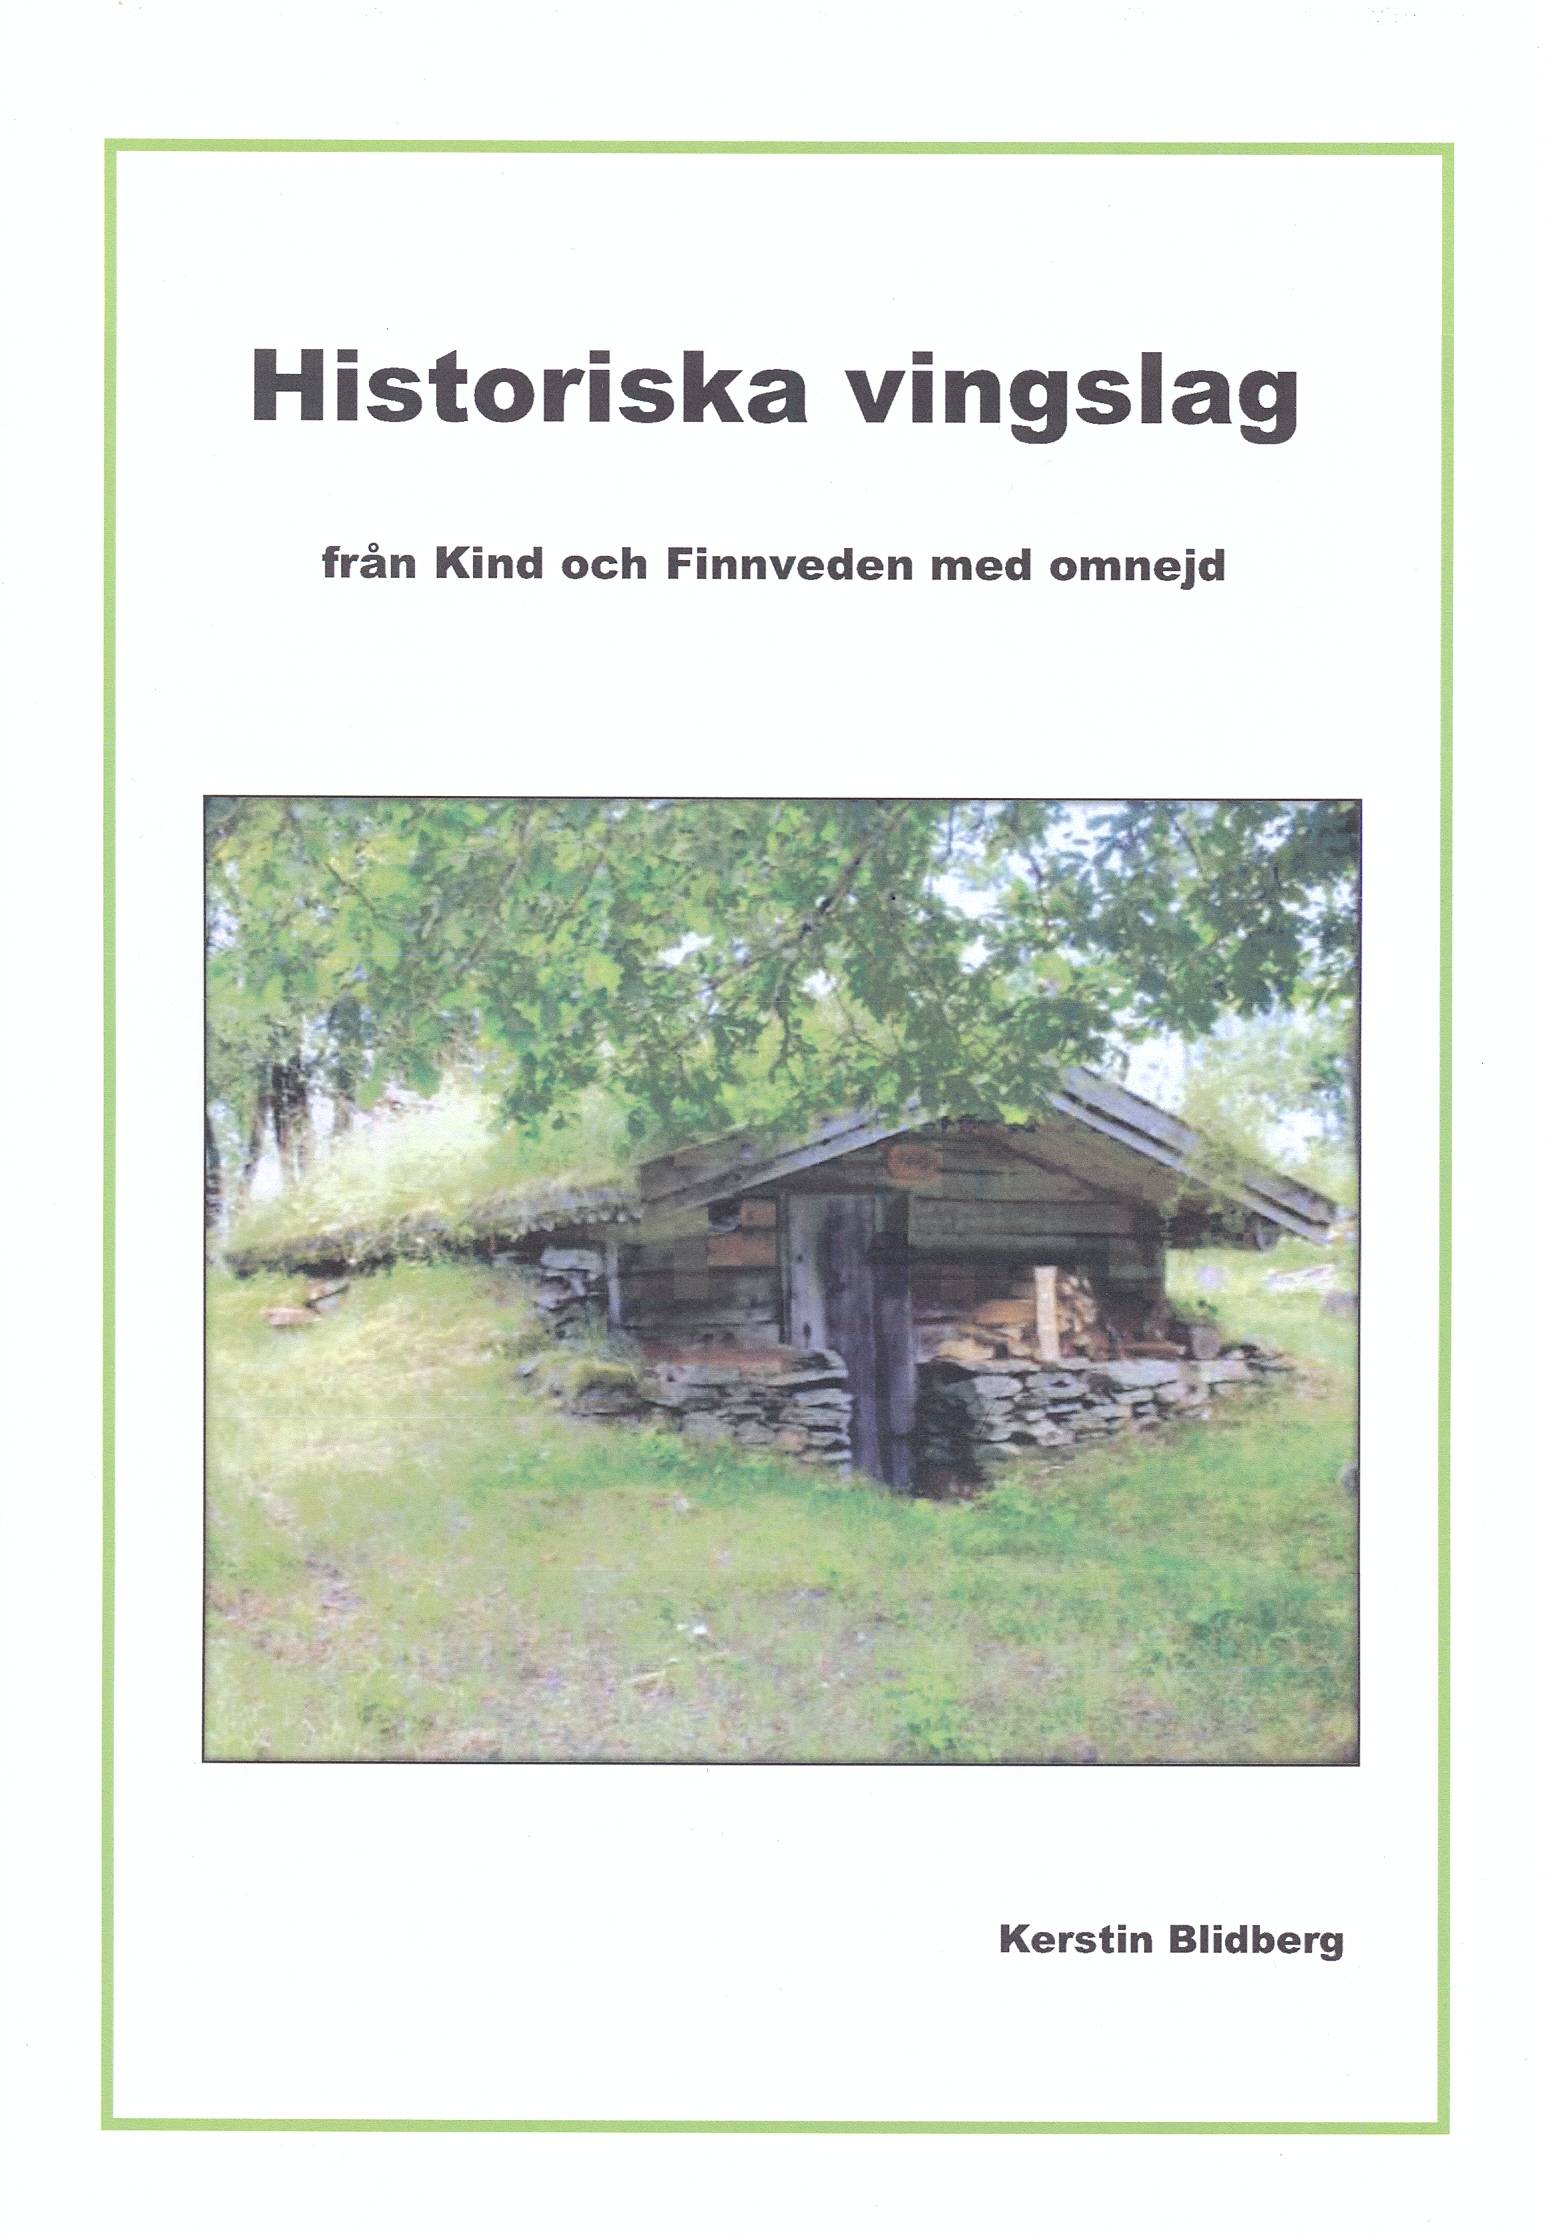 Historiska vingslag från Kind och Finnveden med omnejd